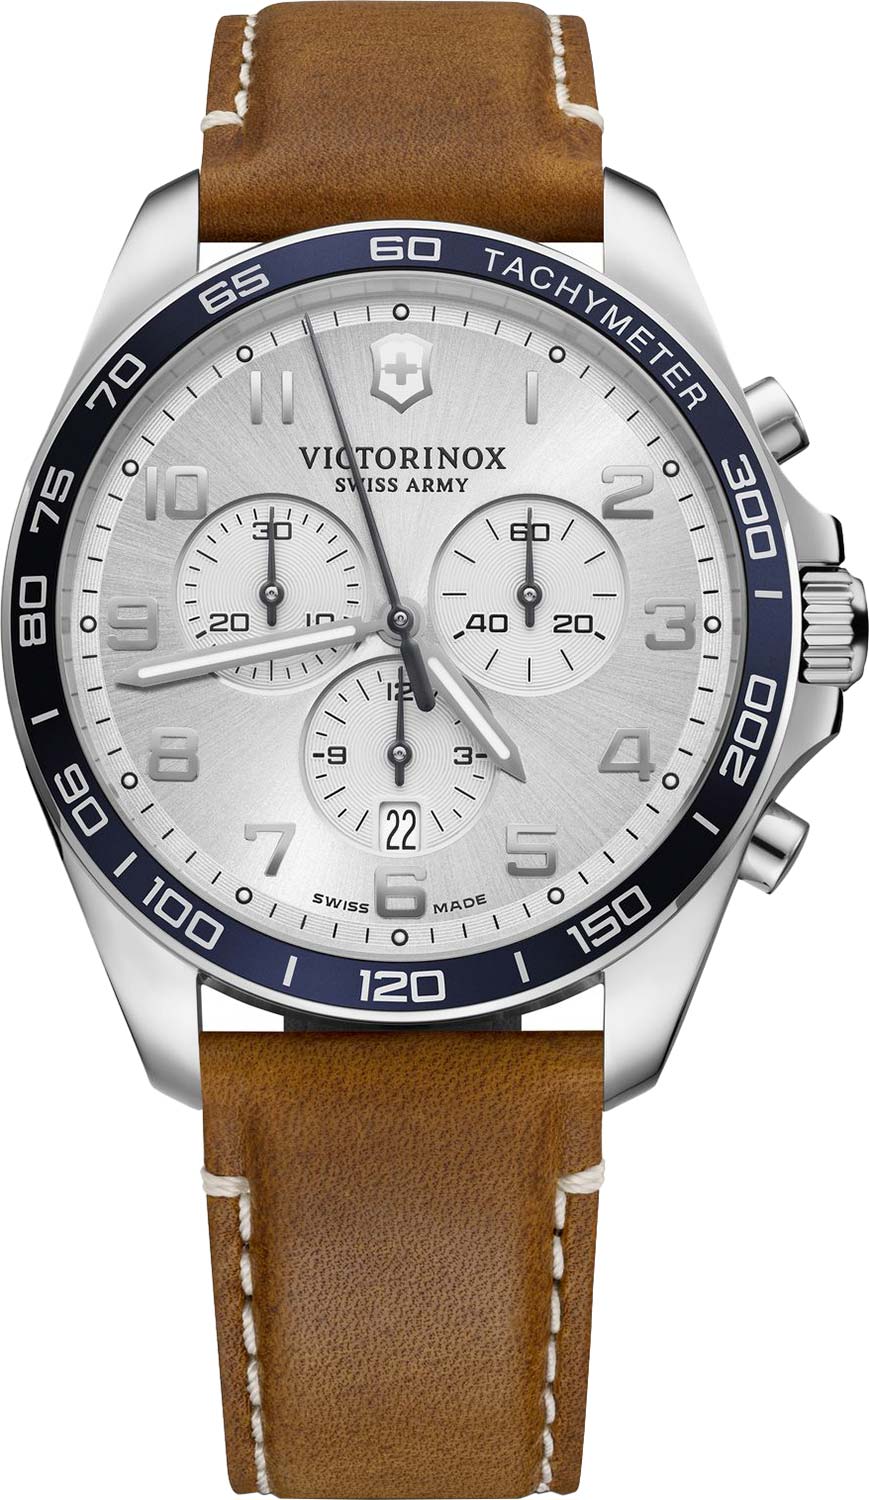 Швейцарские наручные часы Victorinox 241900 с хронографом